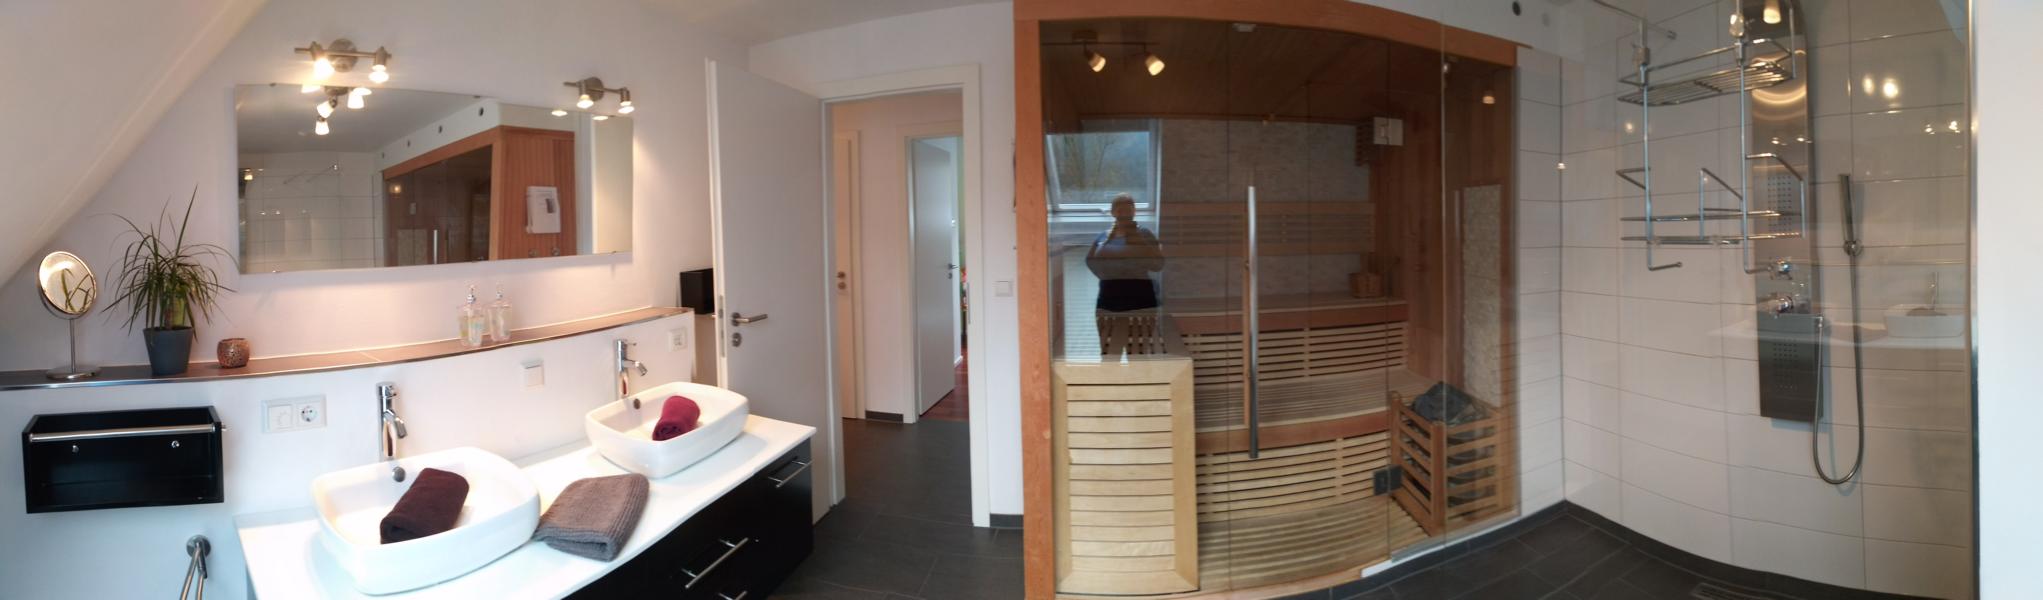 luxus-ferienhaus-mit-sauna-alpirsbach-entspannung-im-schwarzwald-badezimmer-og-sauna